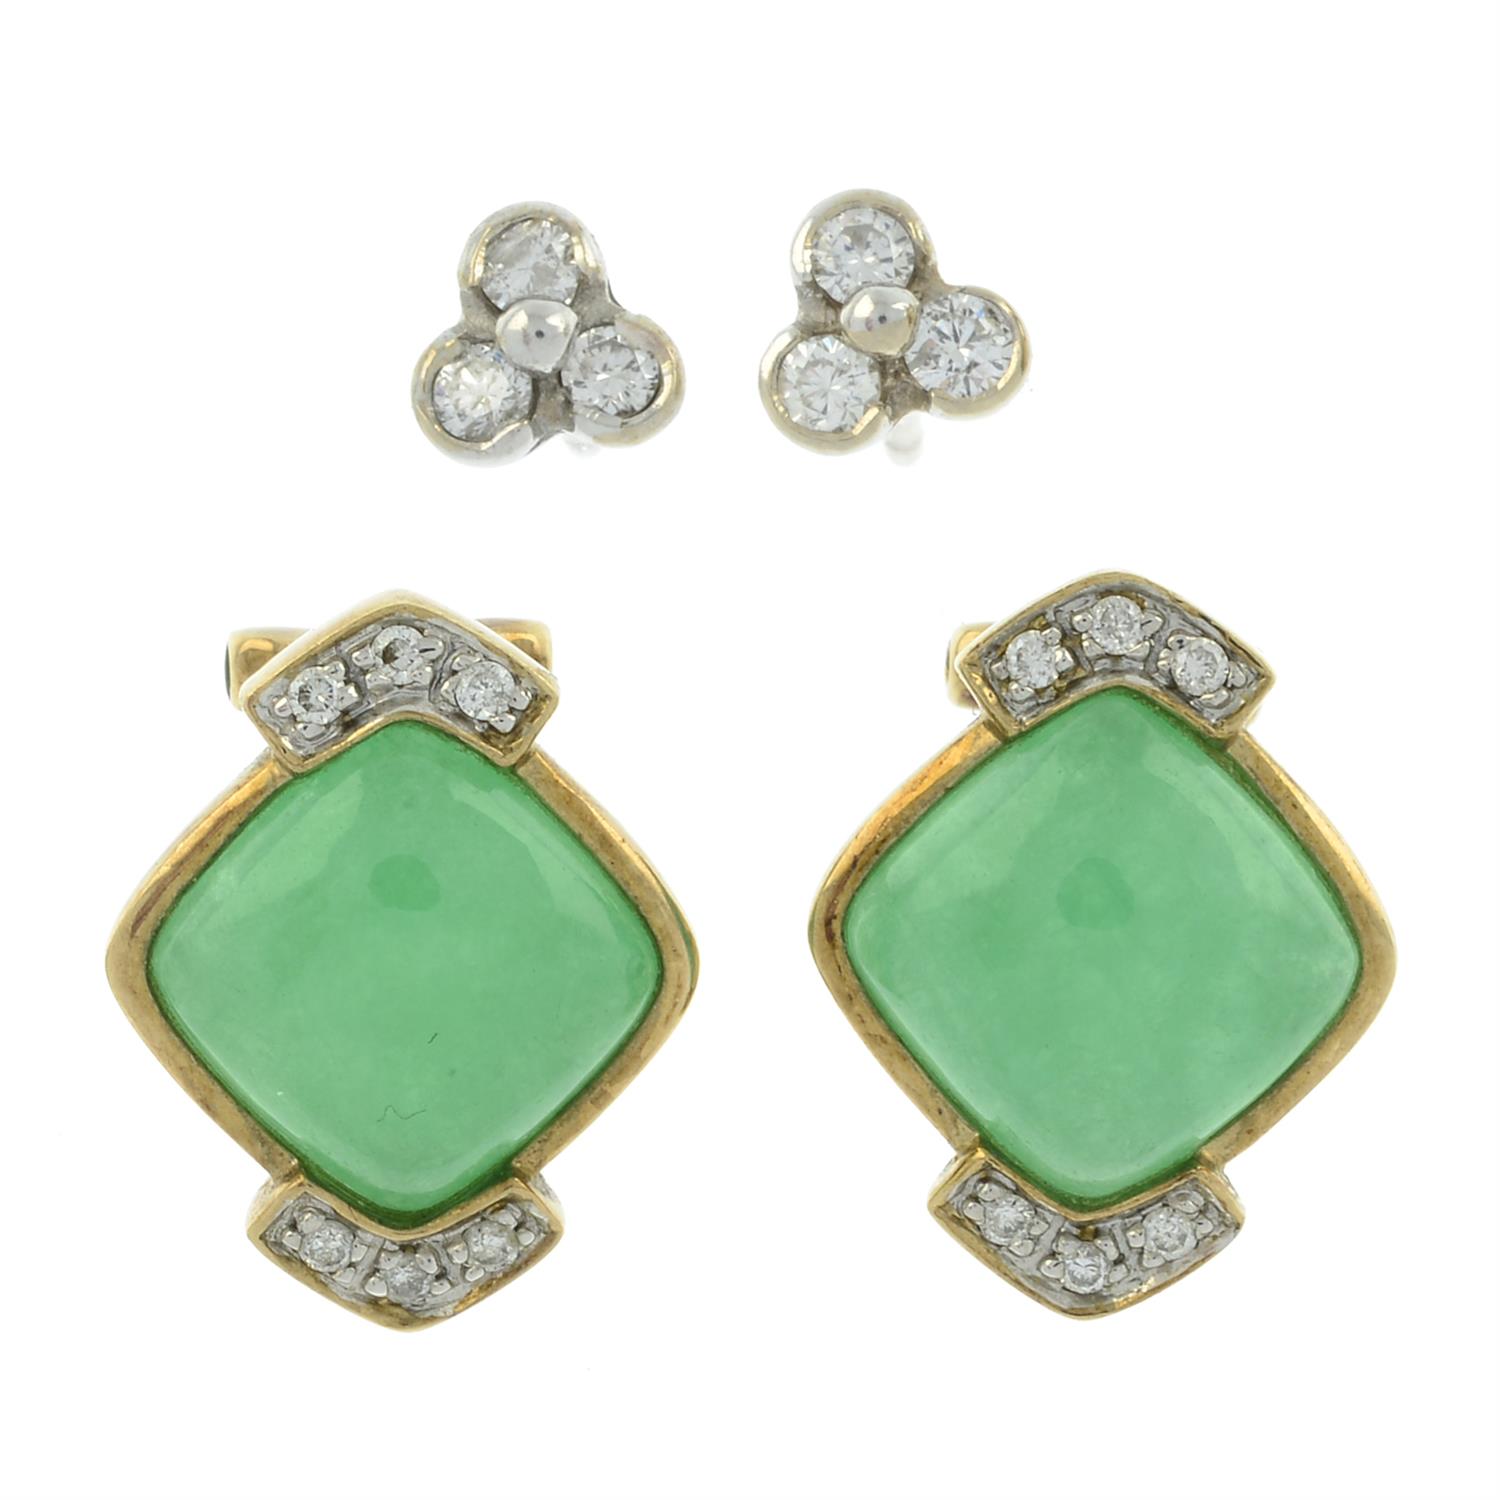 Two pairs of diamond & gem earrings